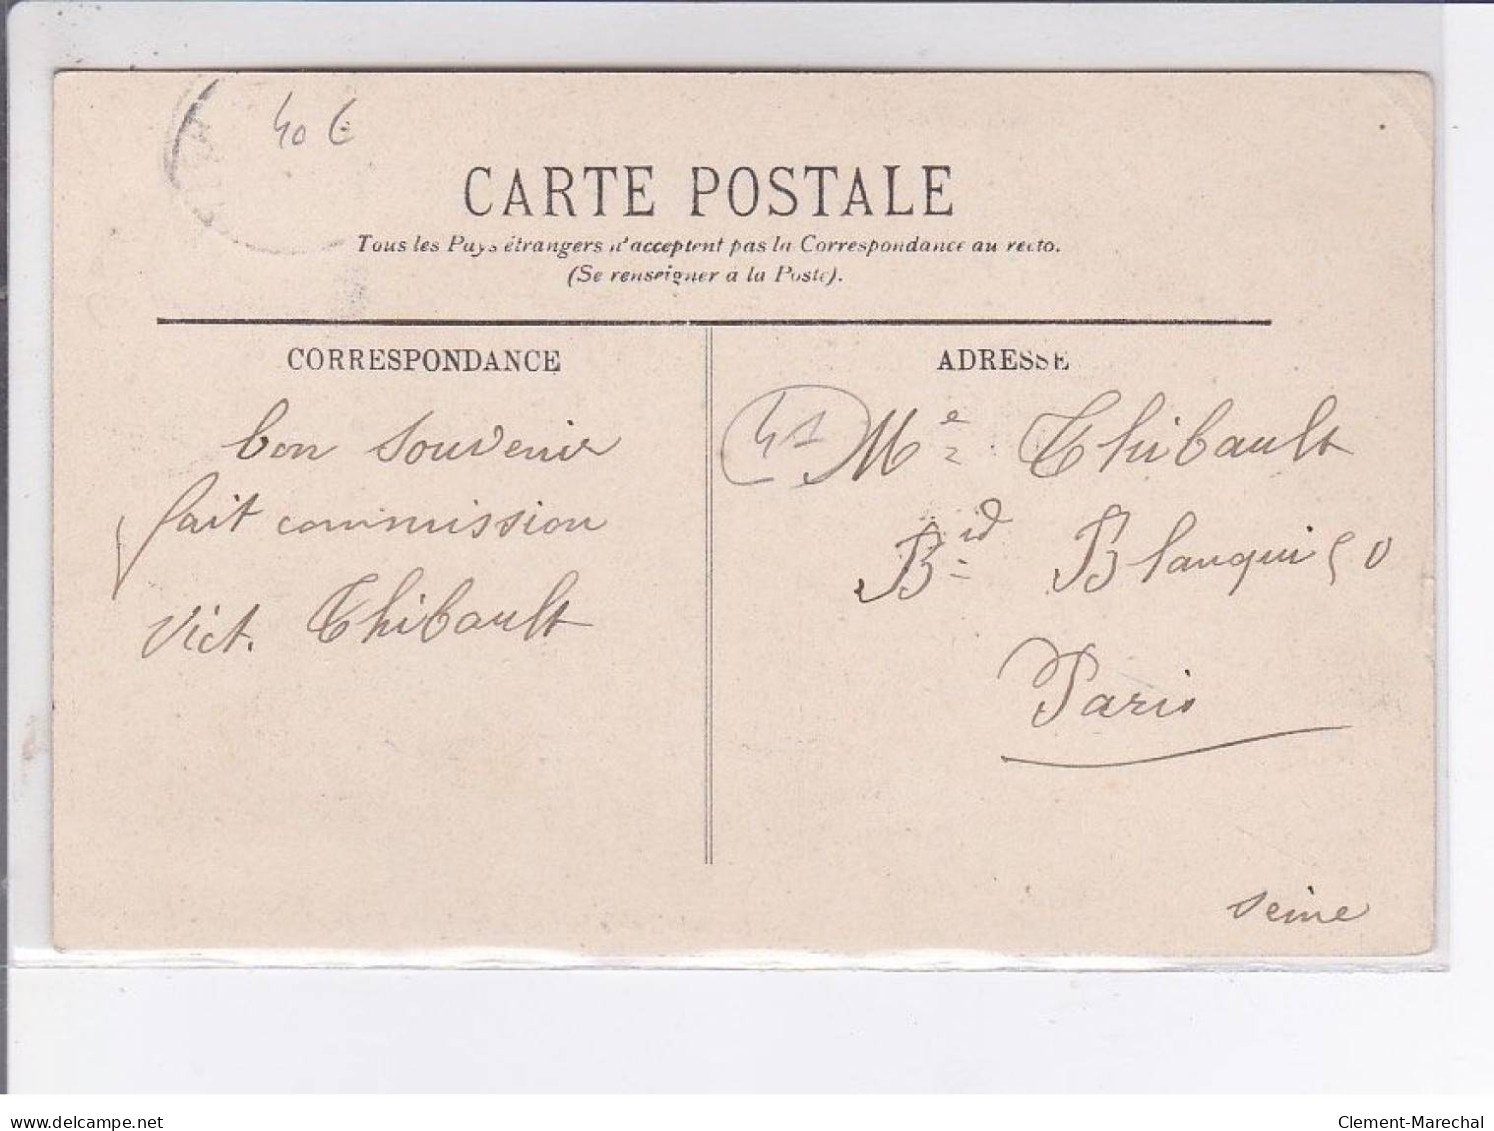 BLOIS: Inventaire De Lca Cathédrale 13 Février 1906 - Très Bon état - Blois